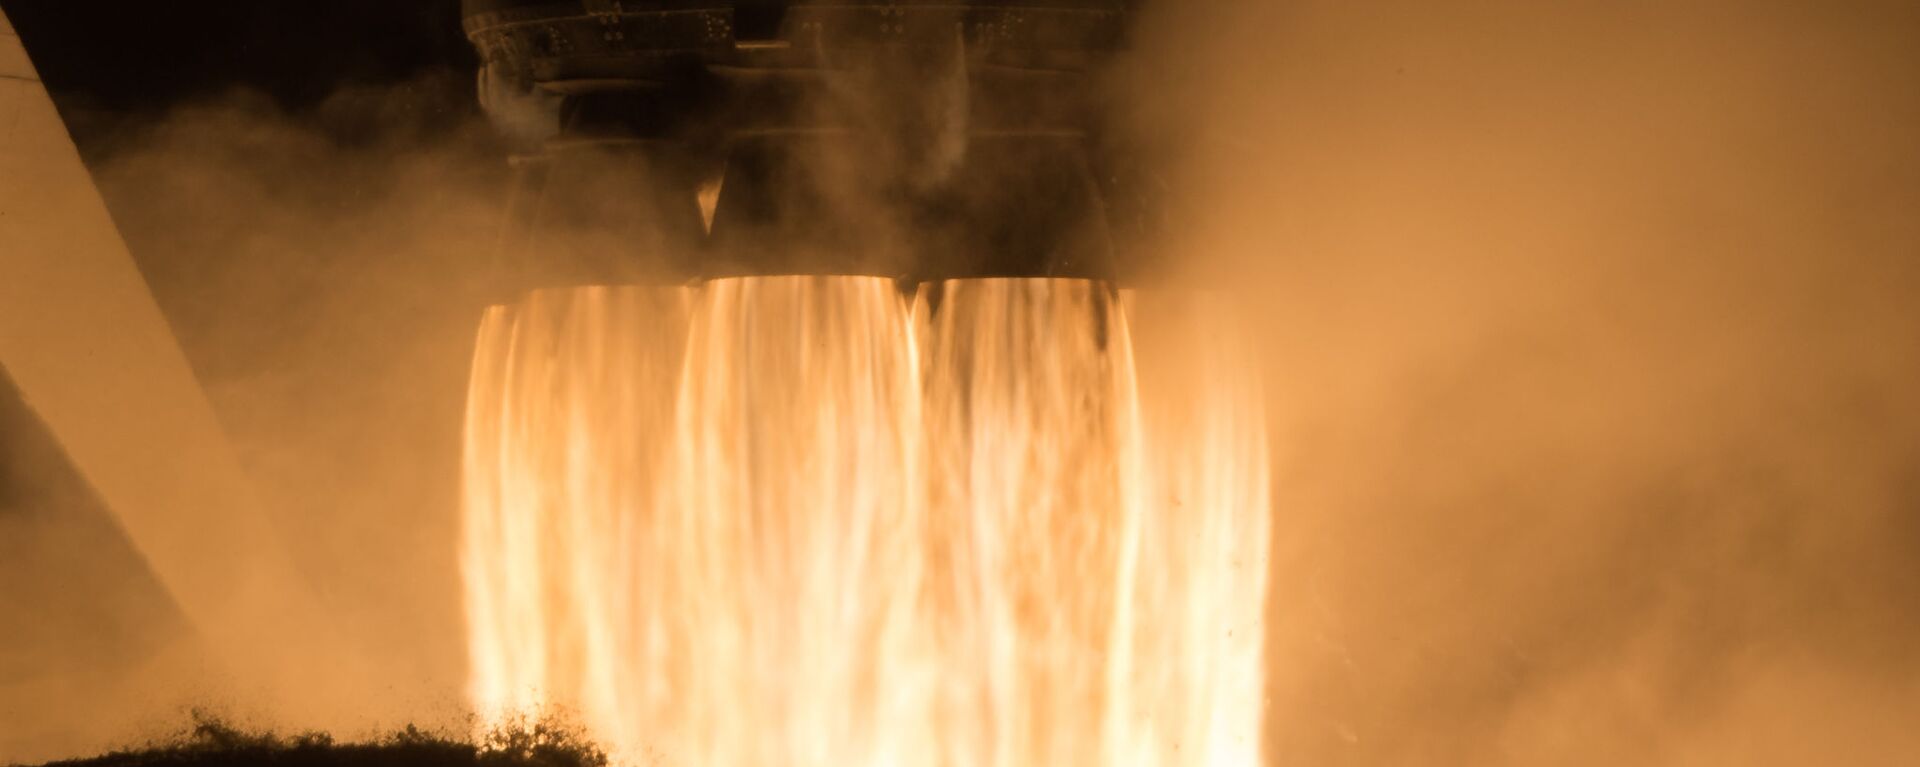 إطلاق مركبة سبيس إكس والتي تحمل اسم كرو دراغون عن طريق صاروخ فالكون 9، من مركز كينيدي للفضاء التابع لناسا في كيب كانافيرال بولاية فلوريدا، الولايات المتحدة 16 نوفمبر 2020 - سبوتنيك عربي, 1920, 29.08.2022